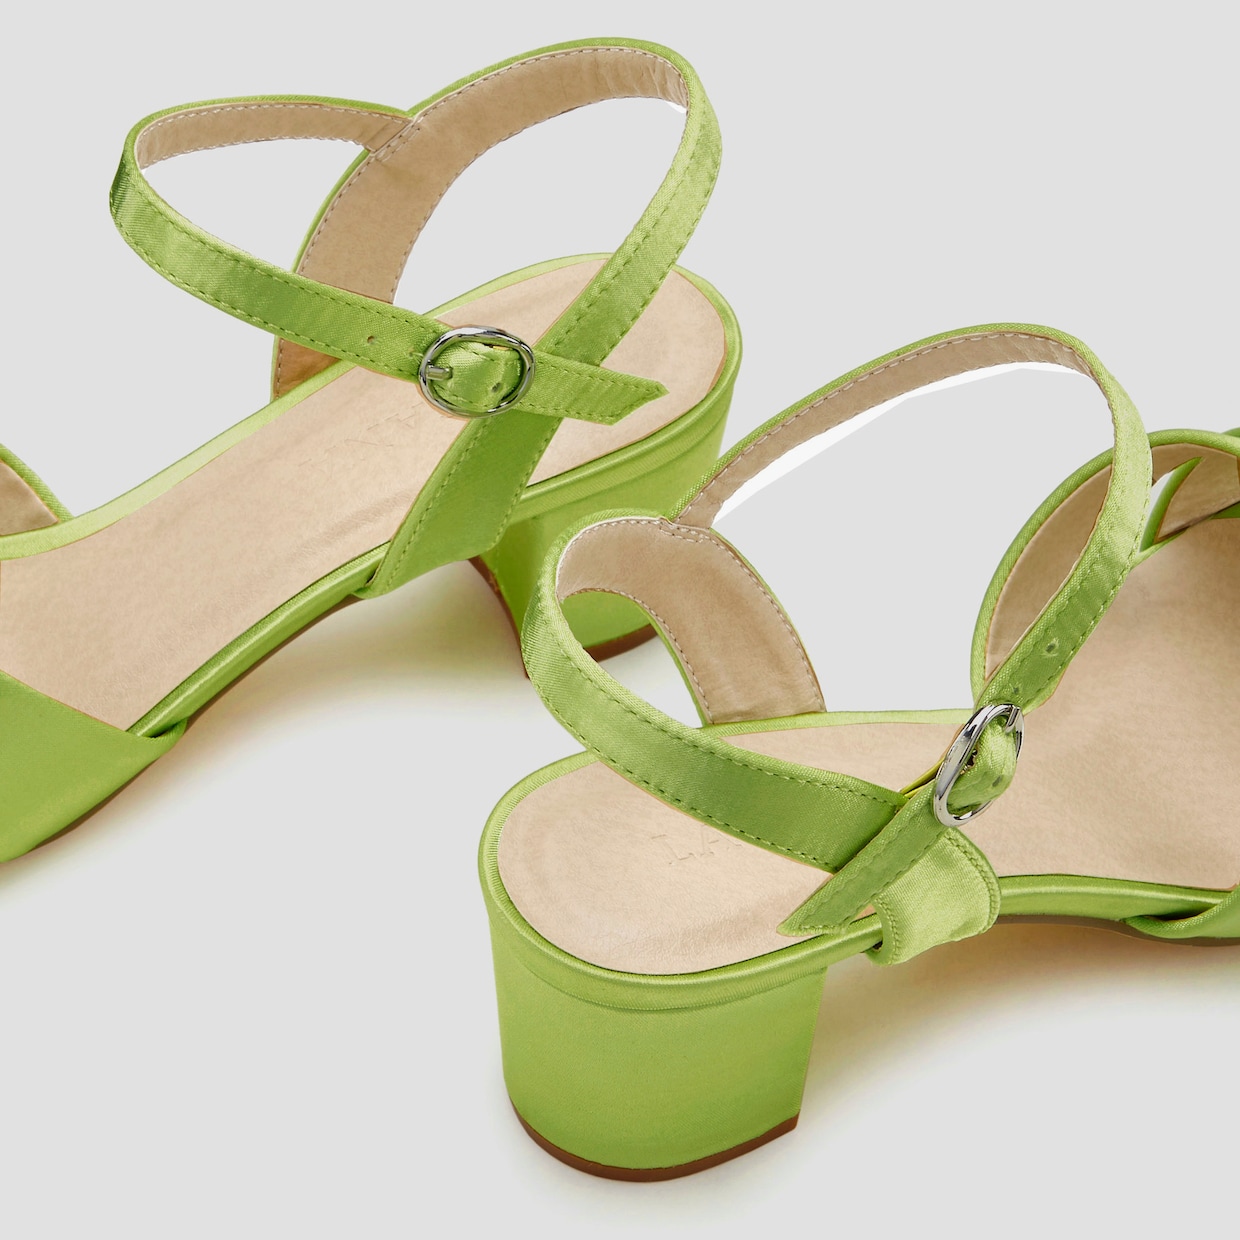 LASCANA Sandalette - hellgrün